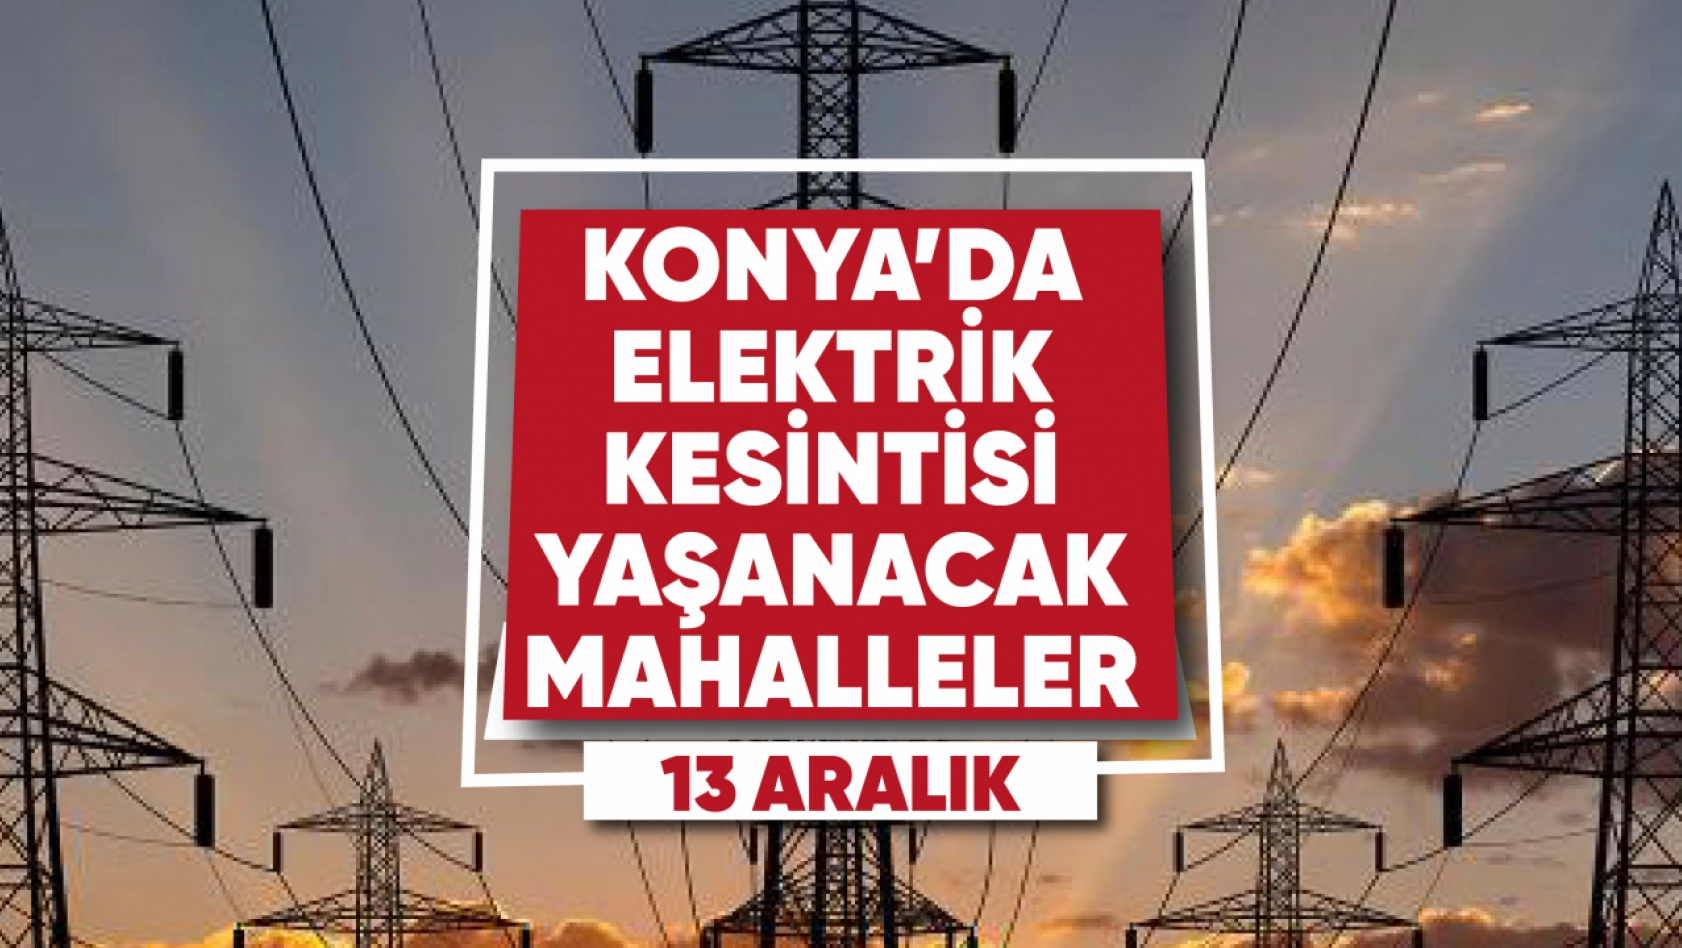 Konya'da elektrik kesintisi yaşanacak mahalle ve sokaklar (13 Aralık)